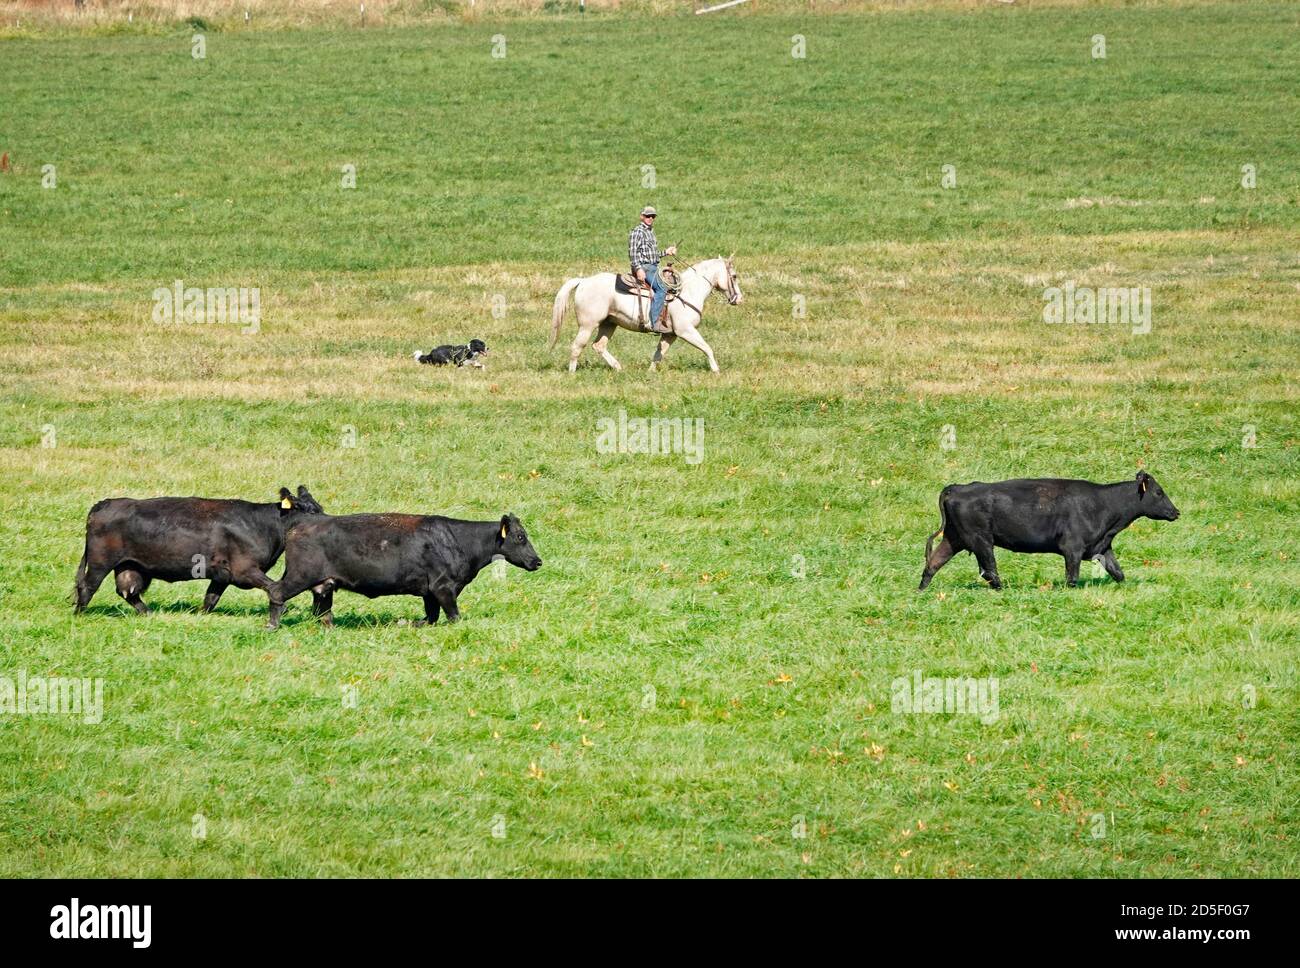 Gli allevatori a cavallo con i cani arrotondano il bestiame nero angus in autunno, spostandoli in un nuovo pascolo, nella regione John Day dell'Oregon centrale. Foto Stock